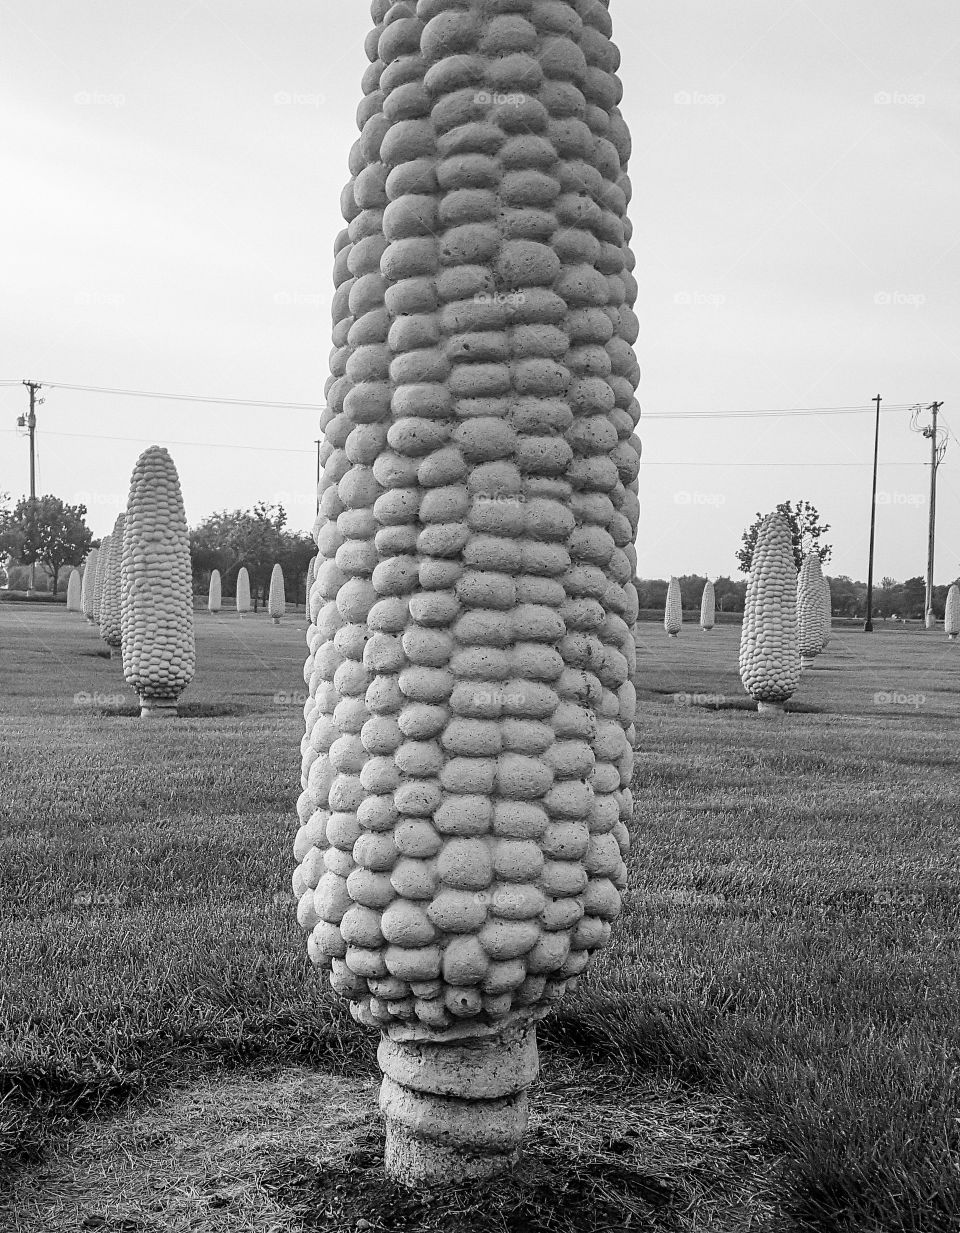 Corn in Ohio